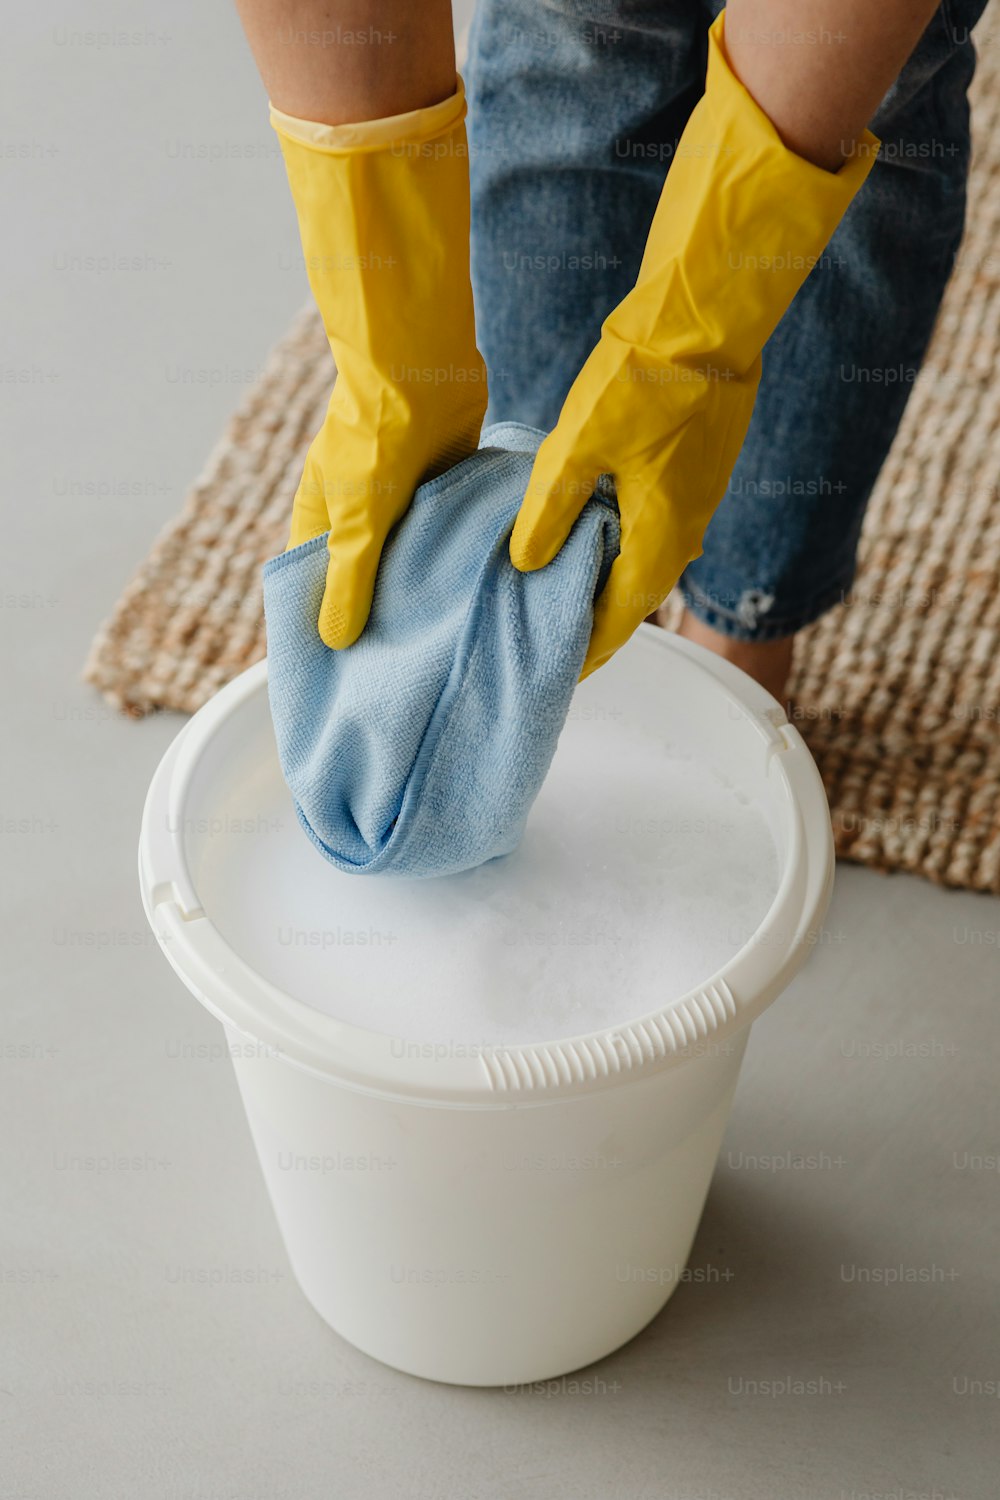 une personne portant des gants jaunes nettoyant un seau